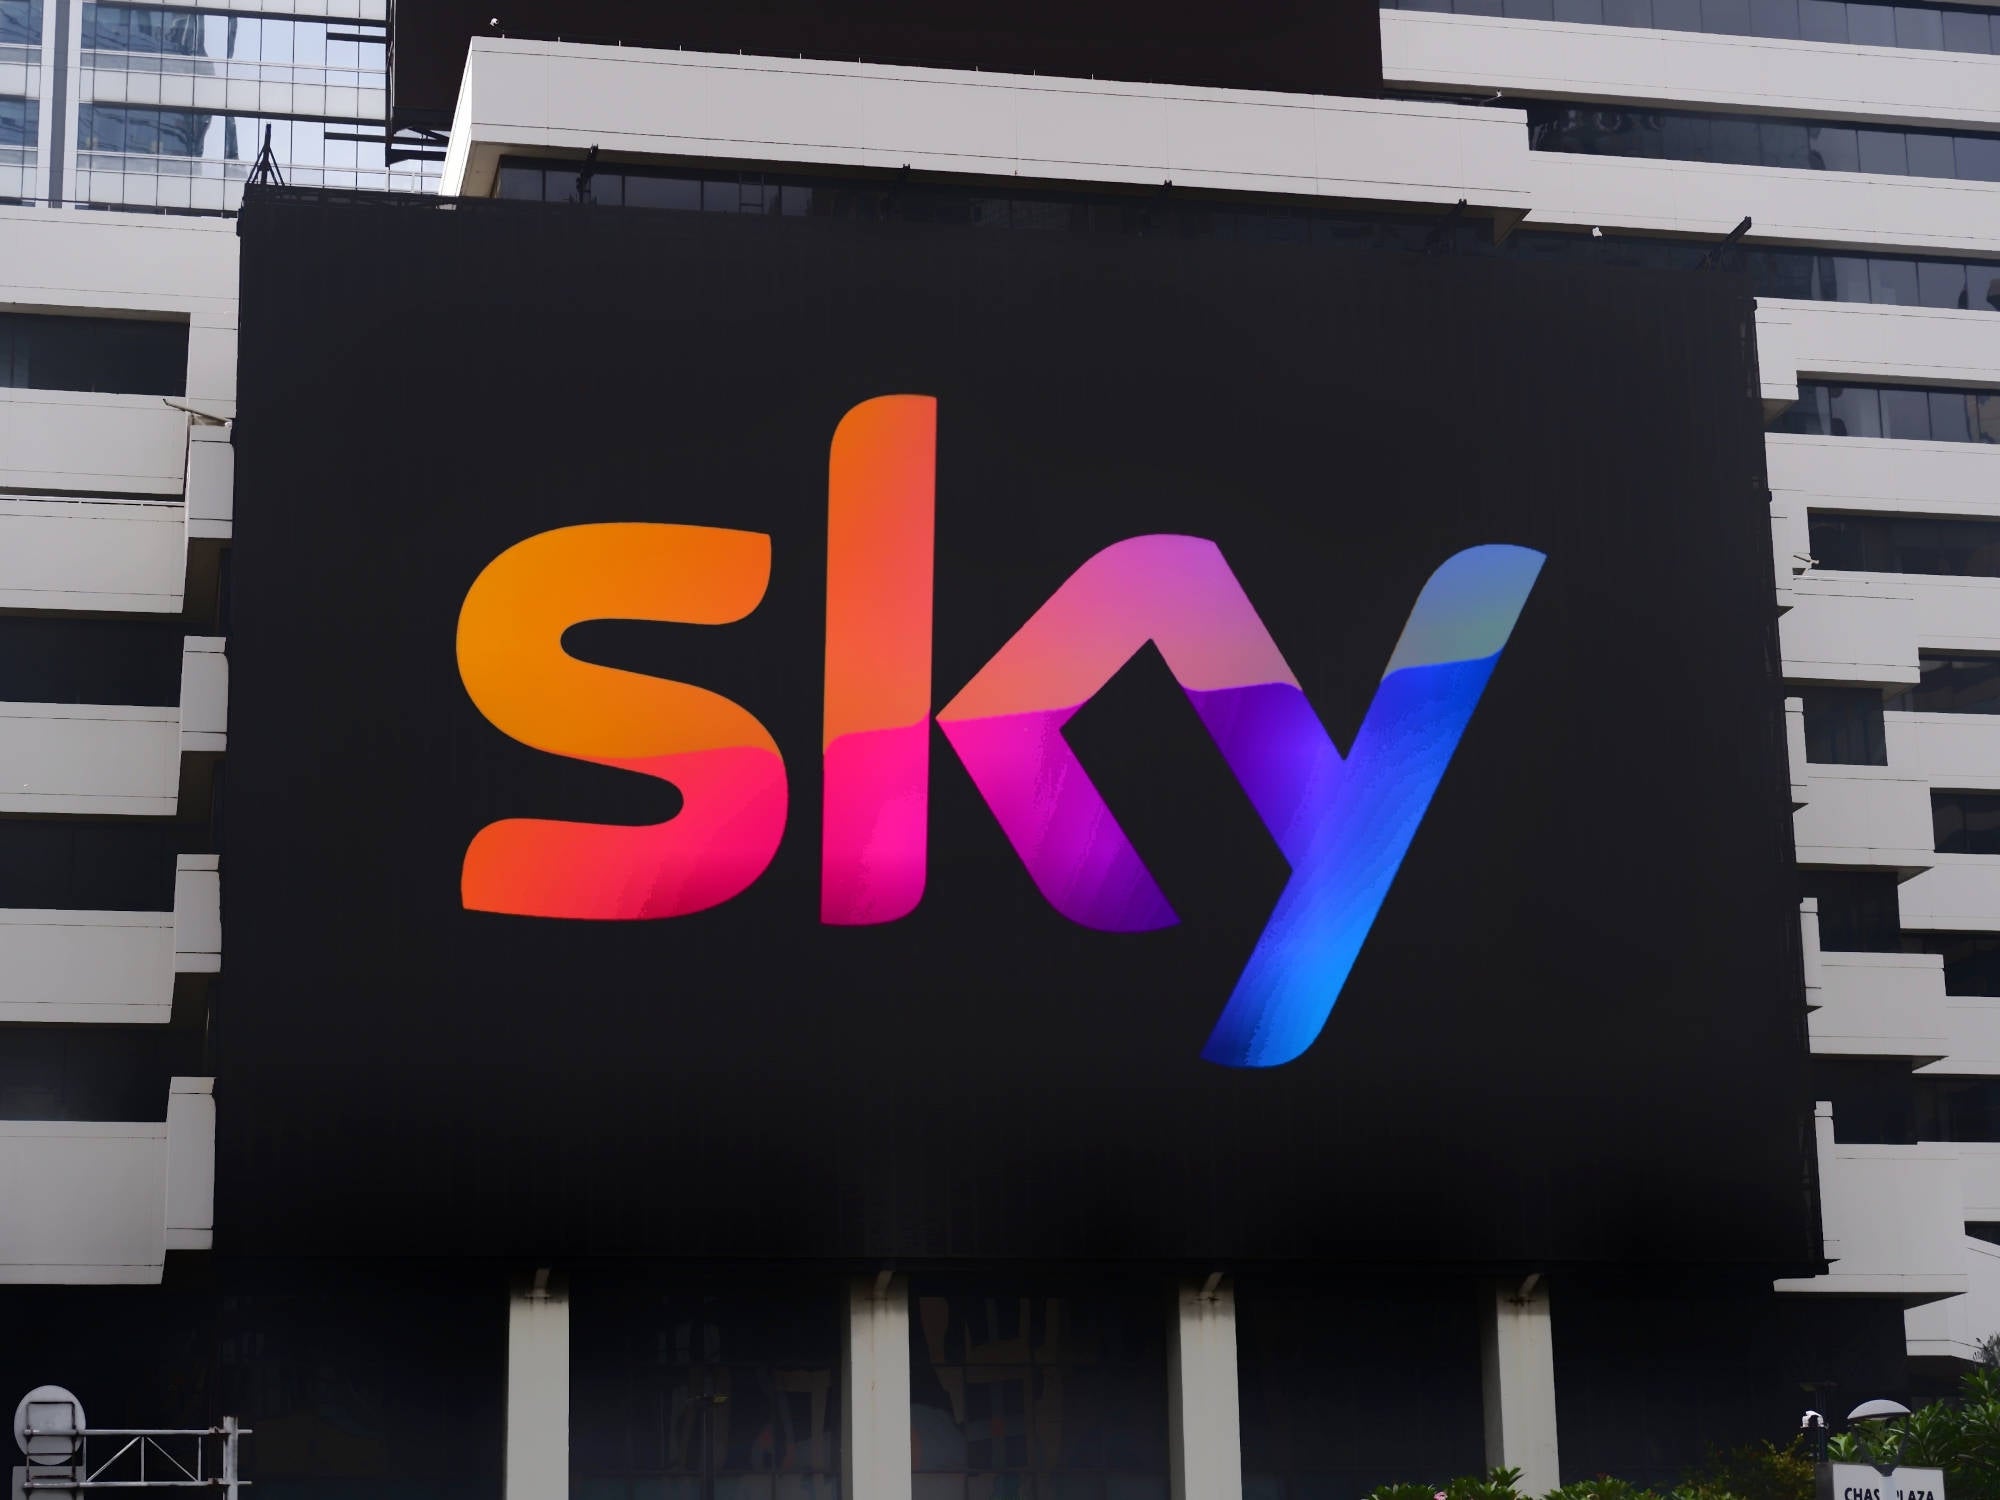 #Sky kündigt Abschaltung zahlreicher Sender an